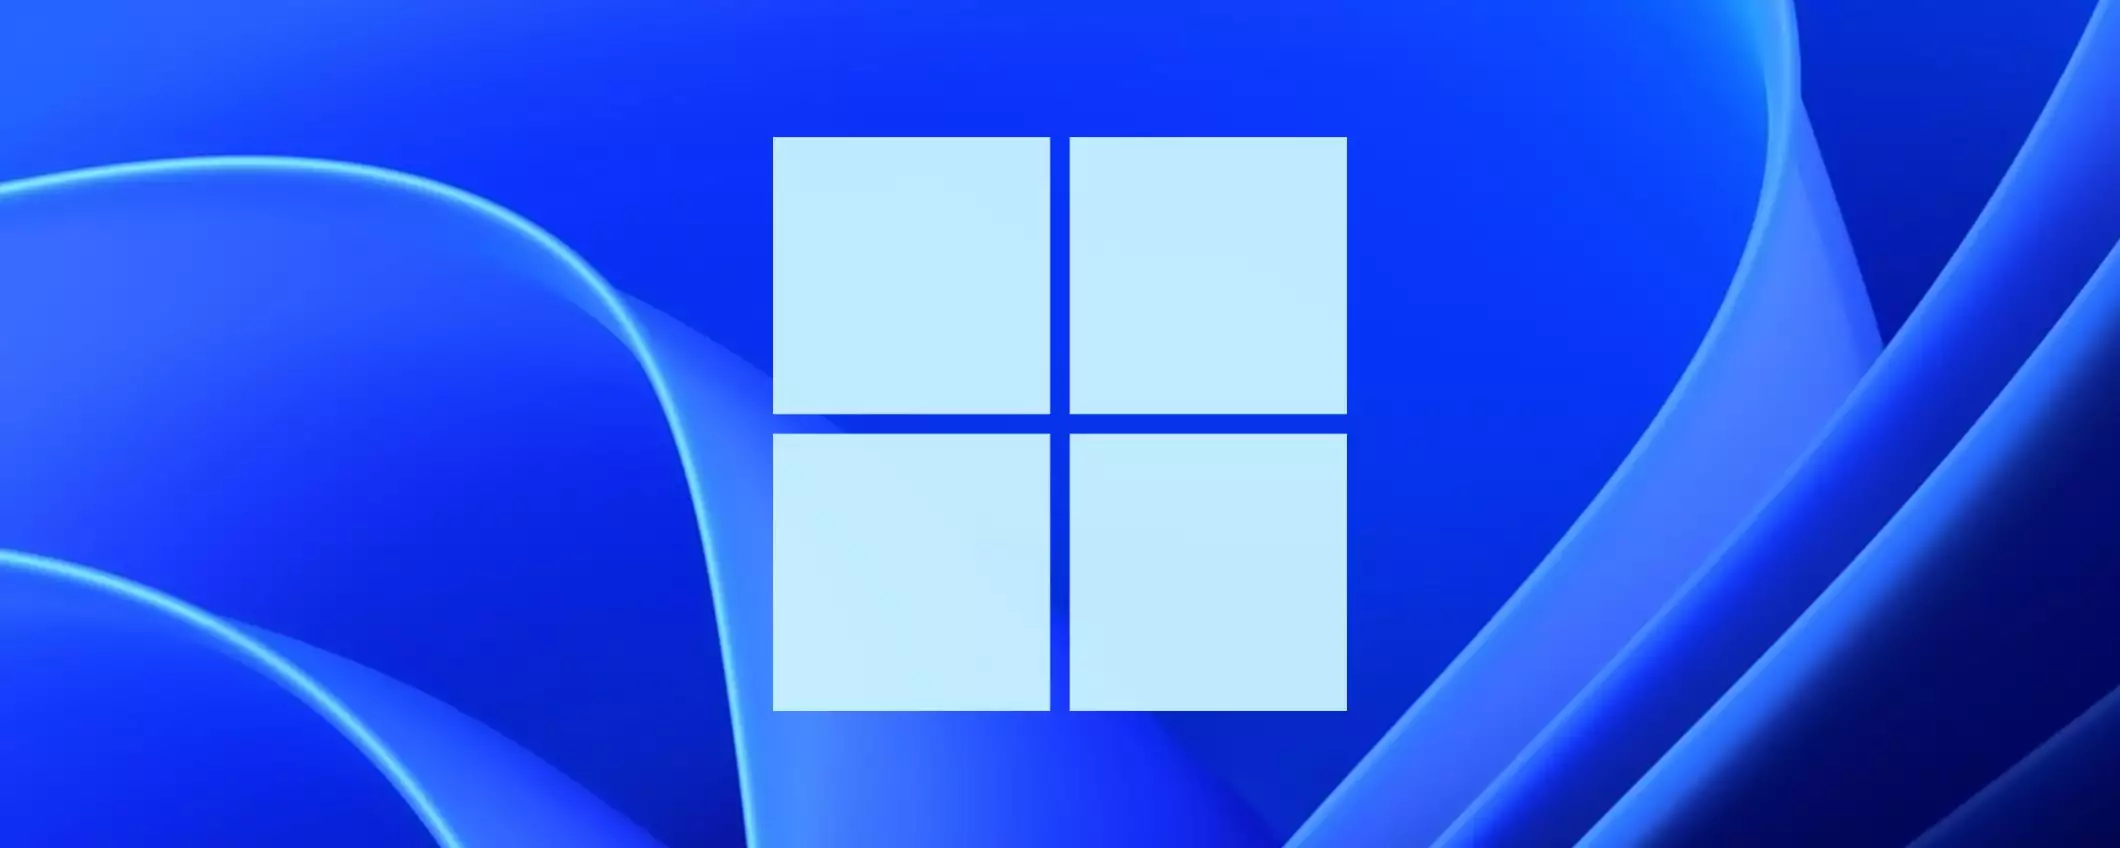 Windows 11: quote di mercato in perdita su Steam